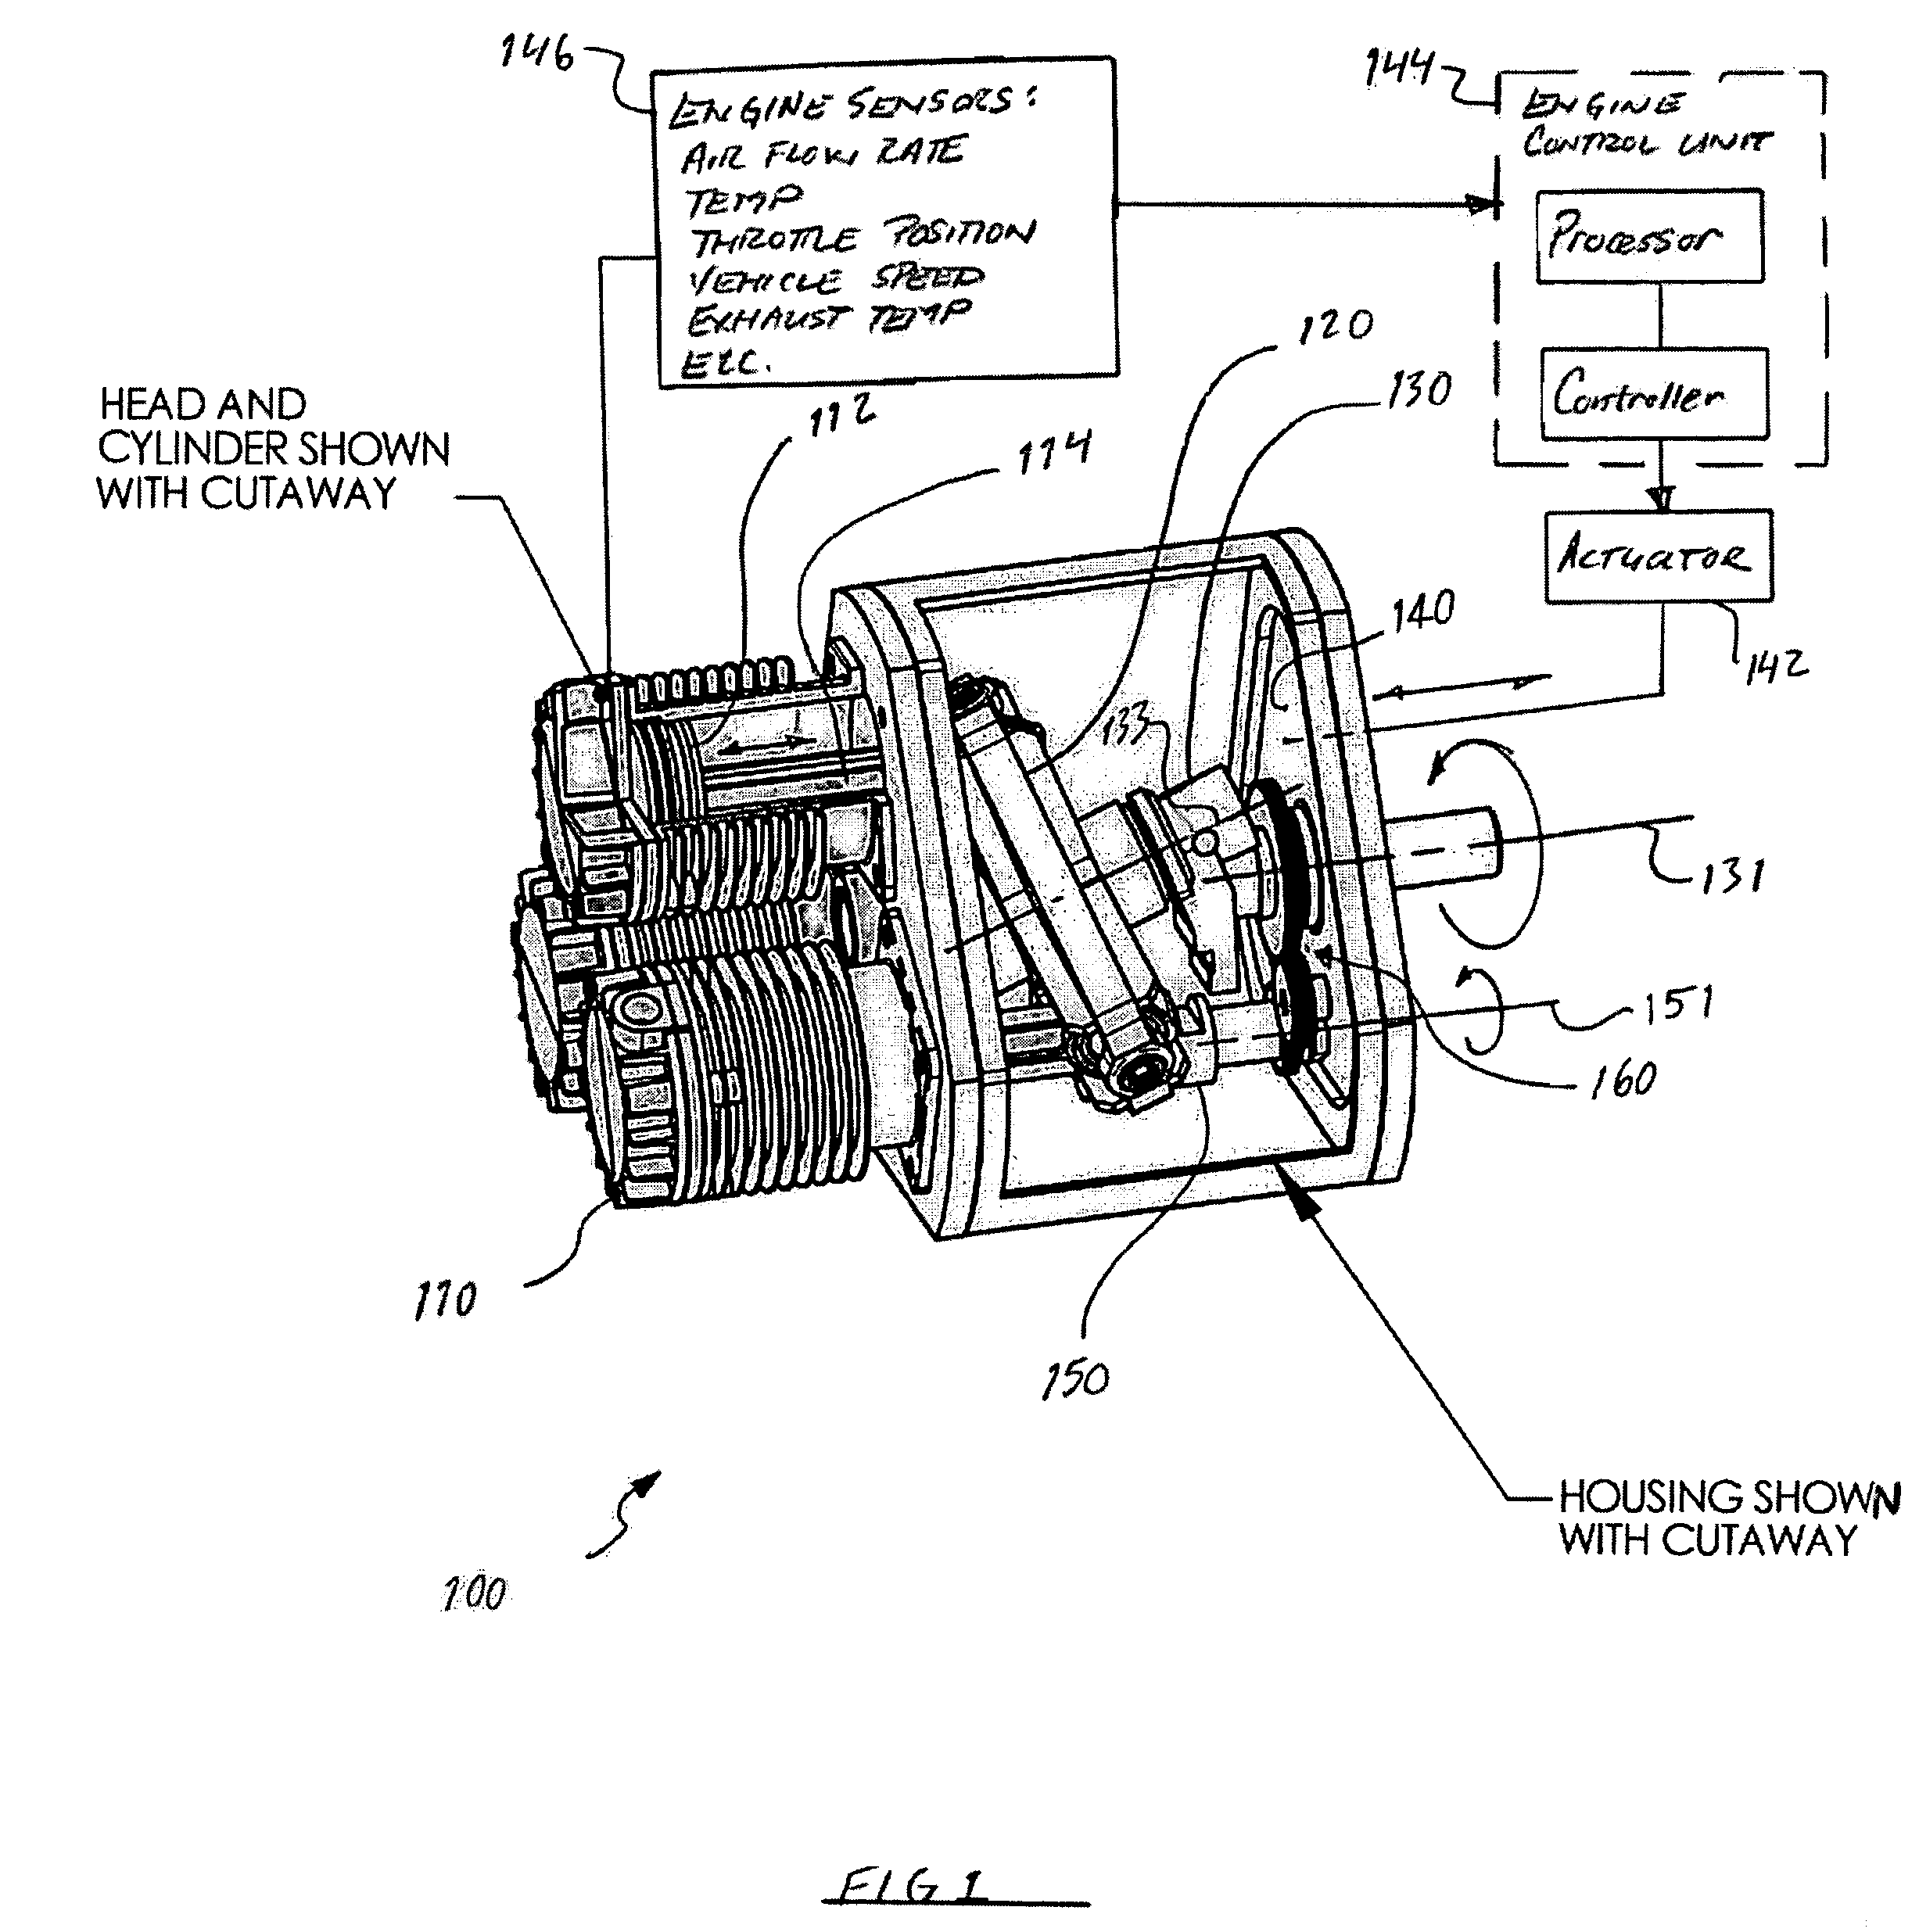 Axial piston machines